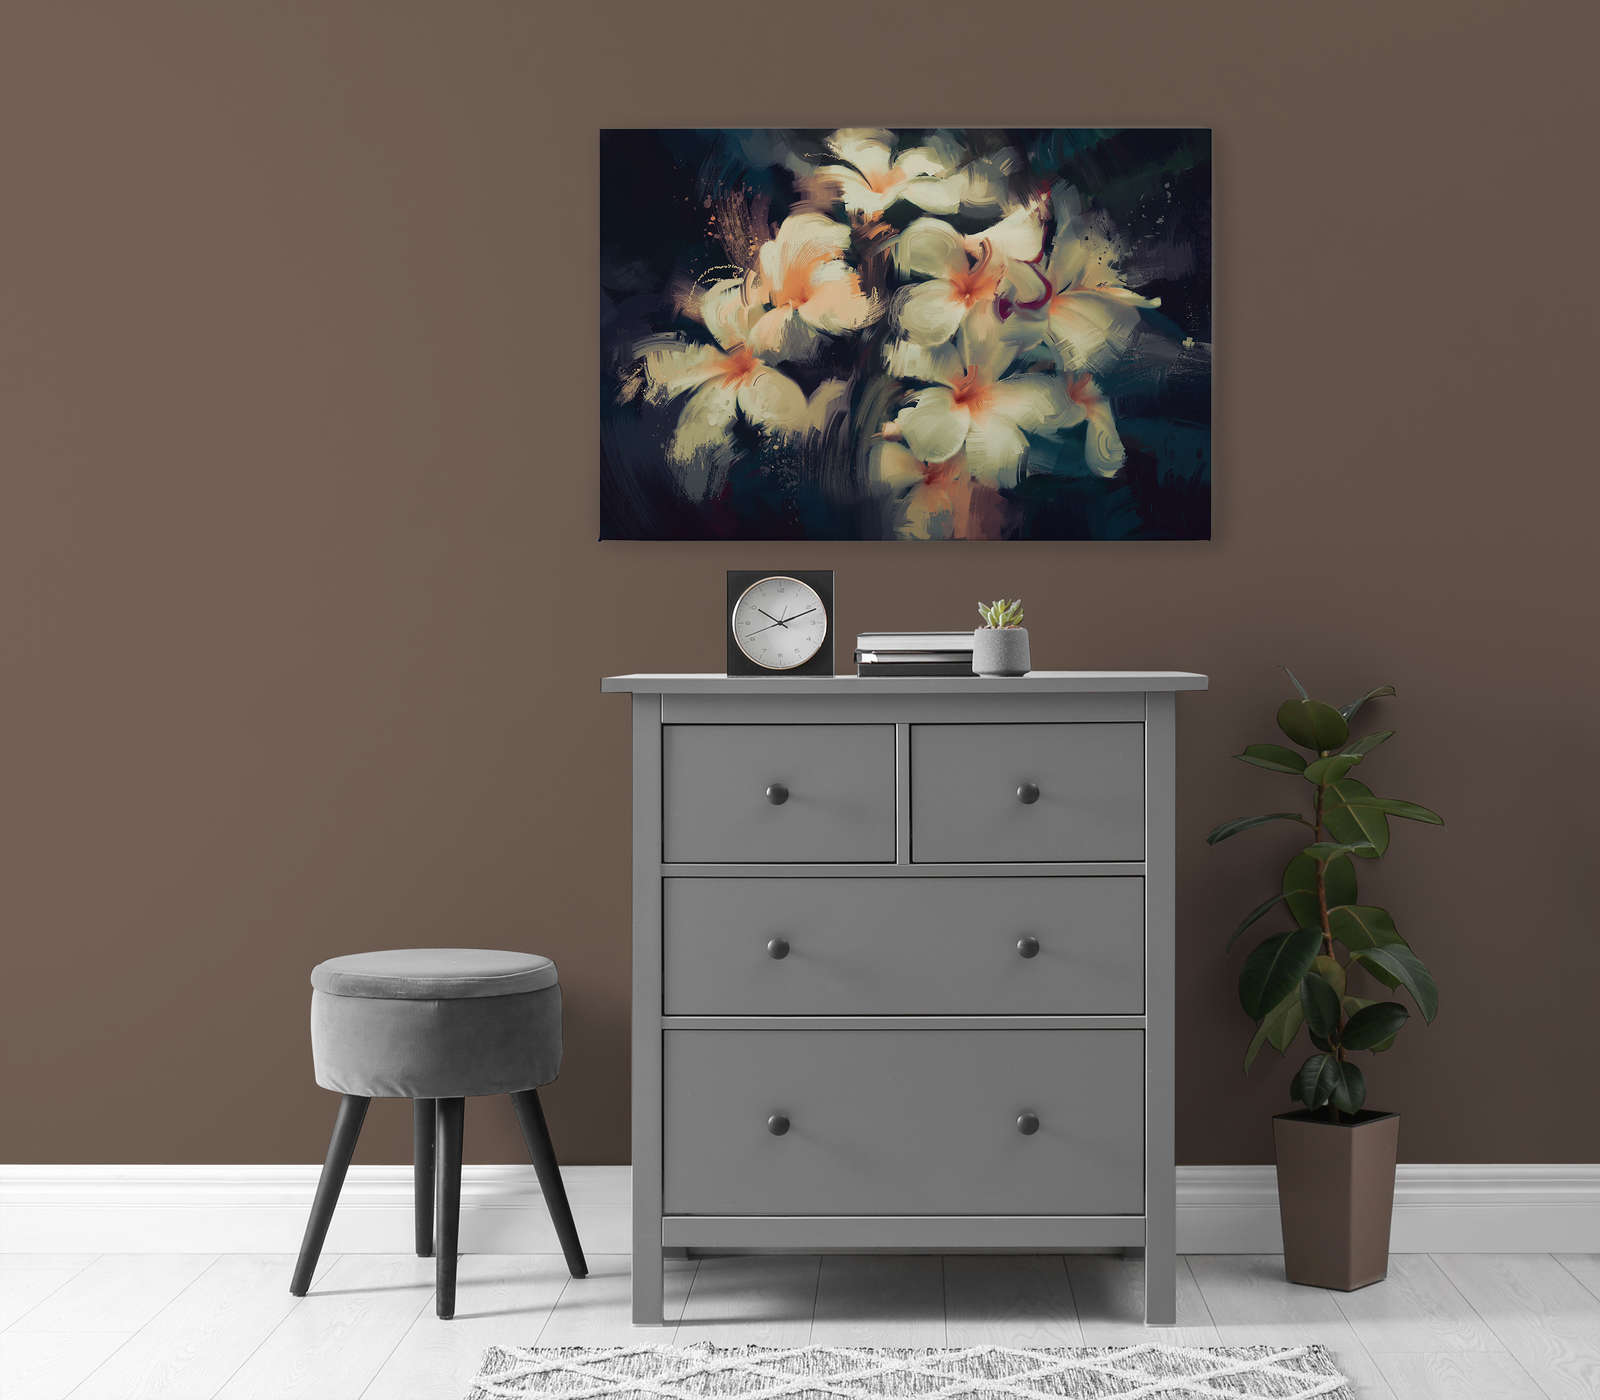             Leinwandbild Blumenstrauß gemalt mit Wischtechnik – 0,90 m x 0,60 m
        